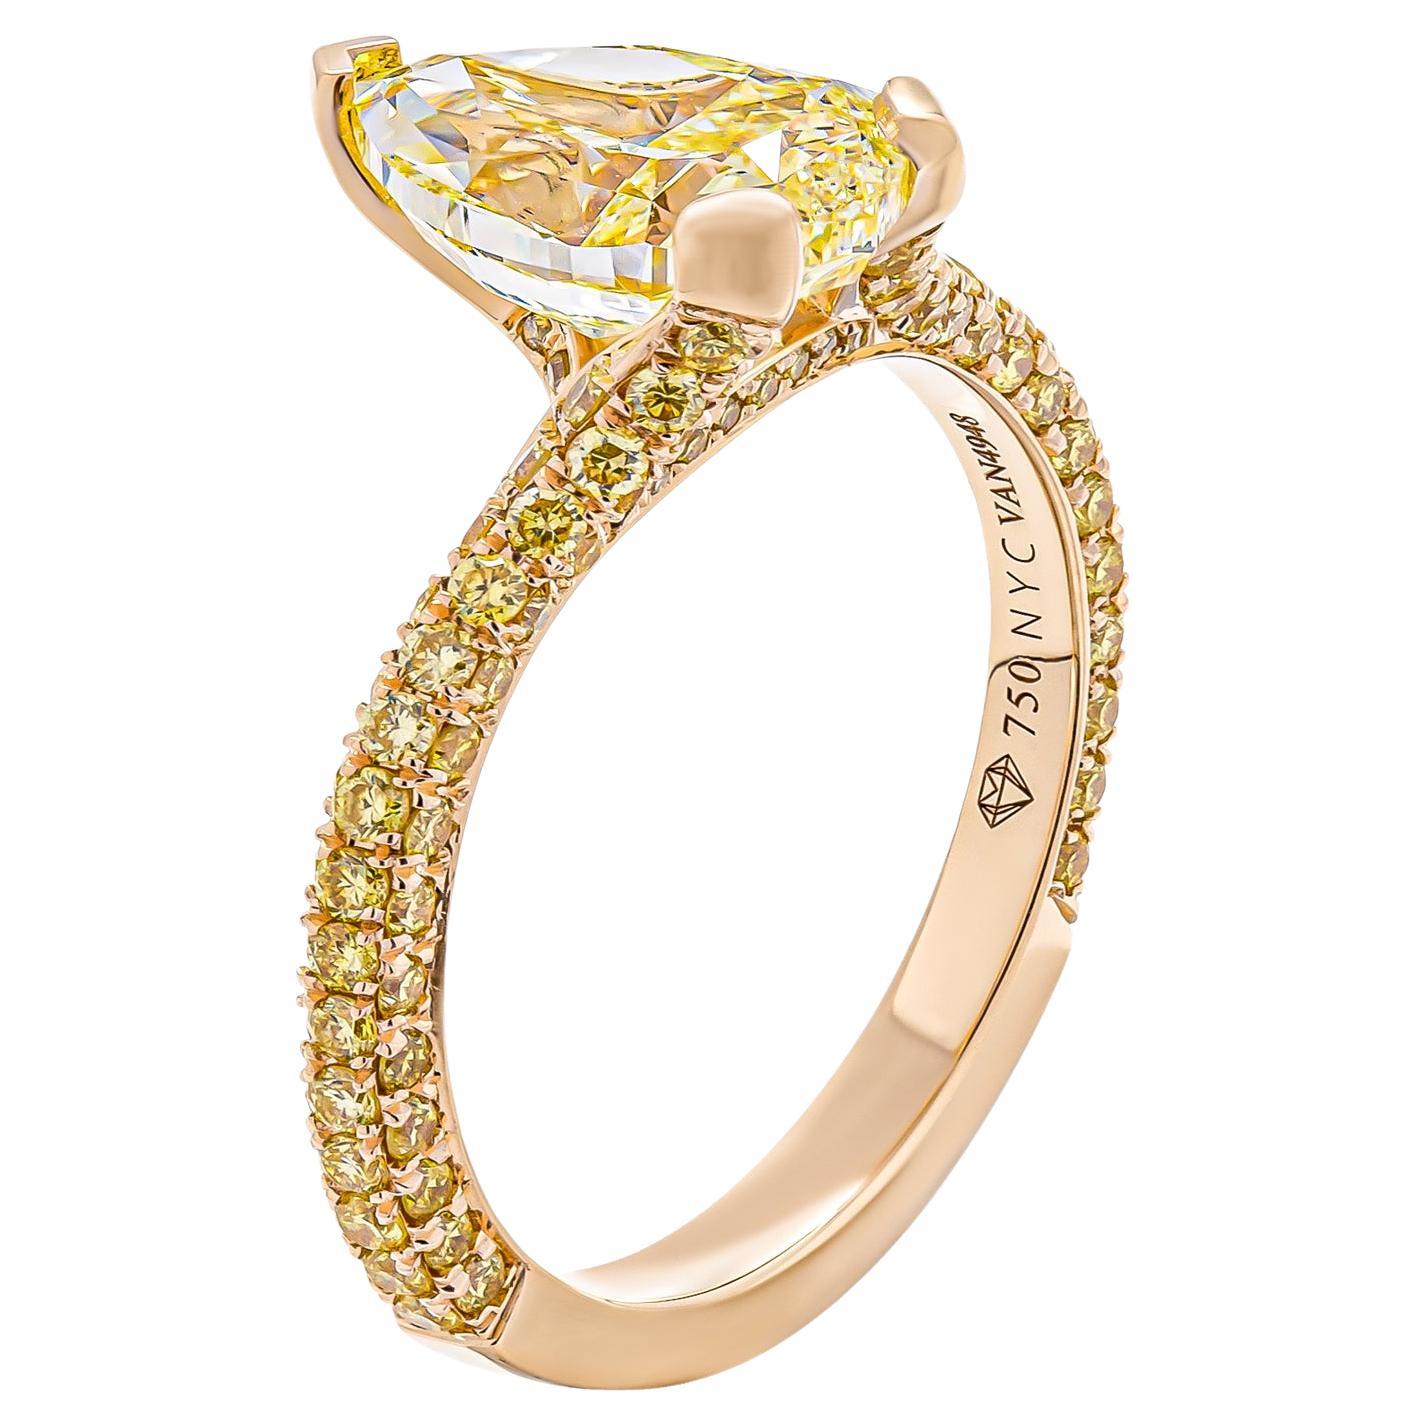 Verlobungsring mit 2,01 Karat gelbem Fancy-Diamant in Birnenform